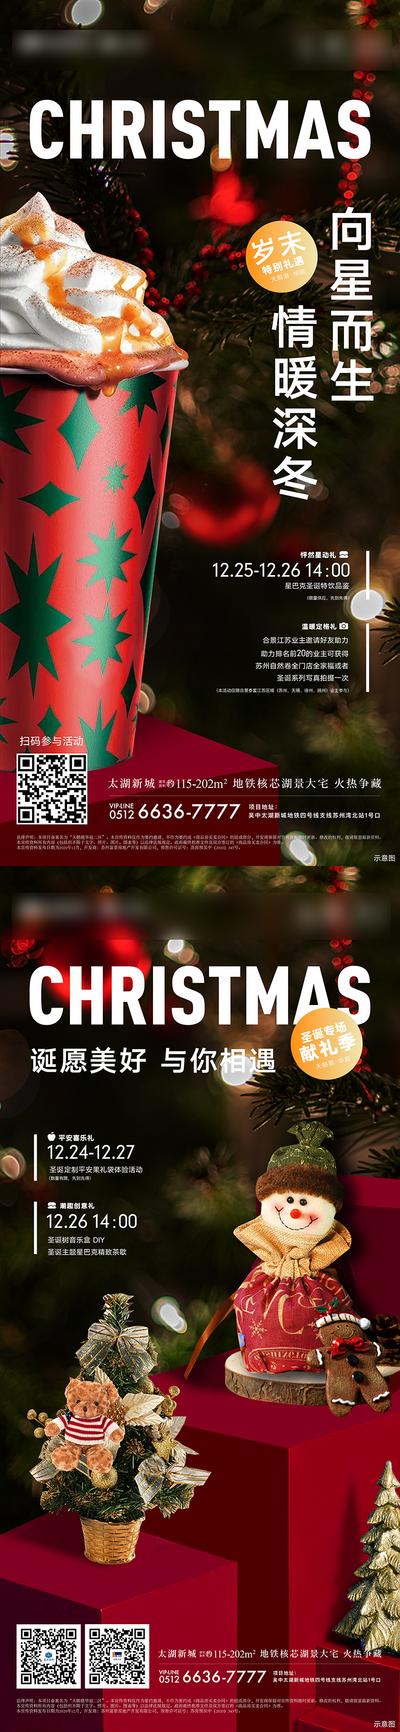 【南门网】海报 房地产 圣诞节 星巴克 周末暖场 活动